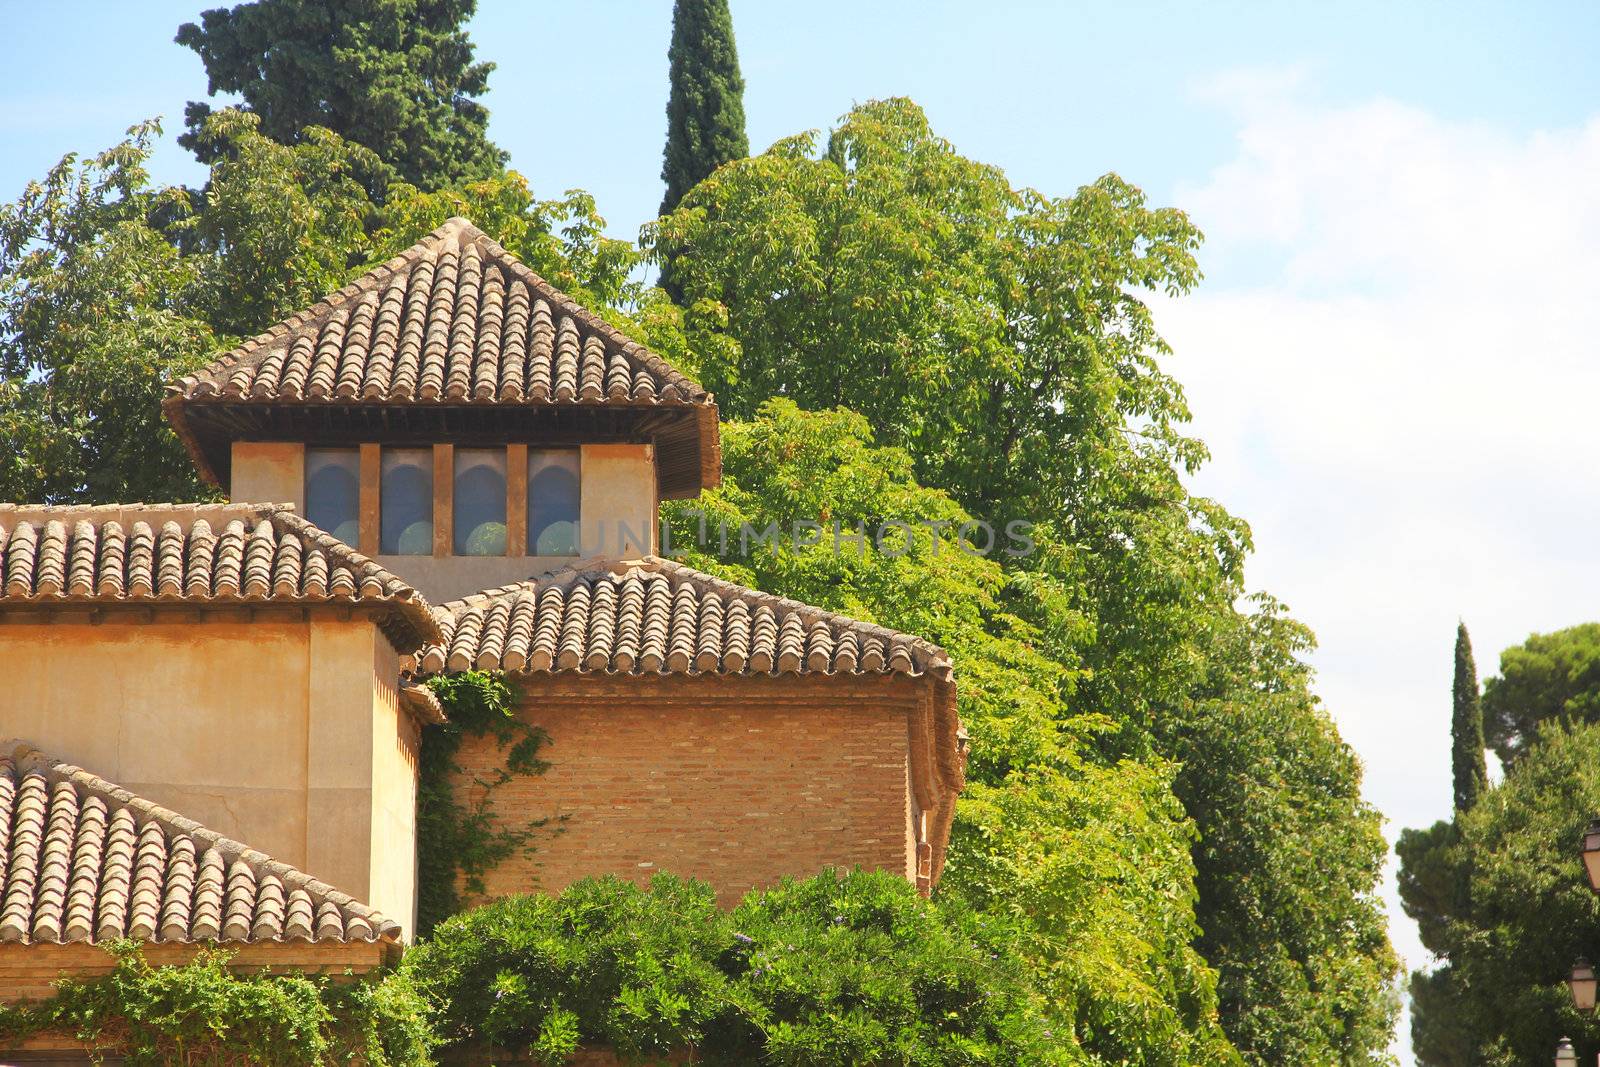 Alhambra by destillat